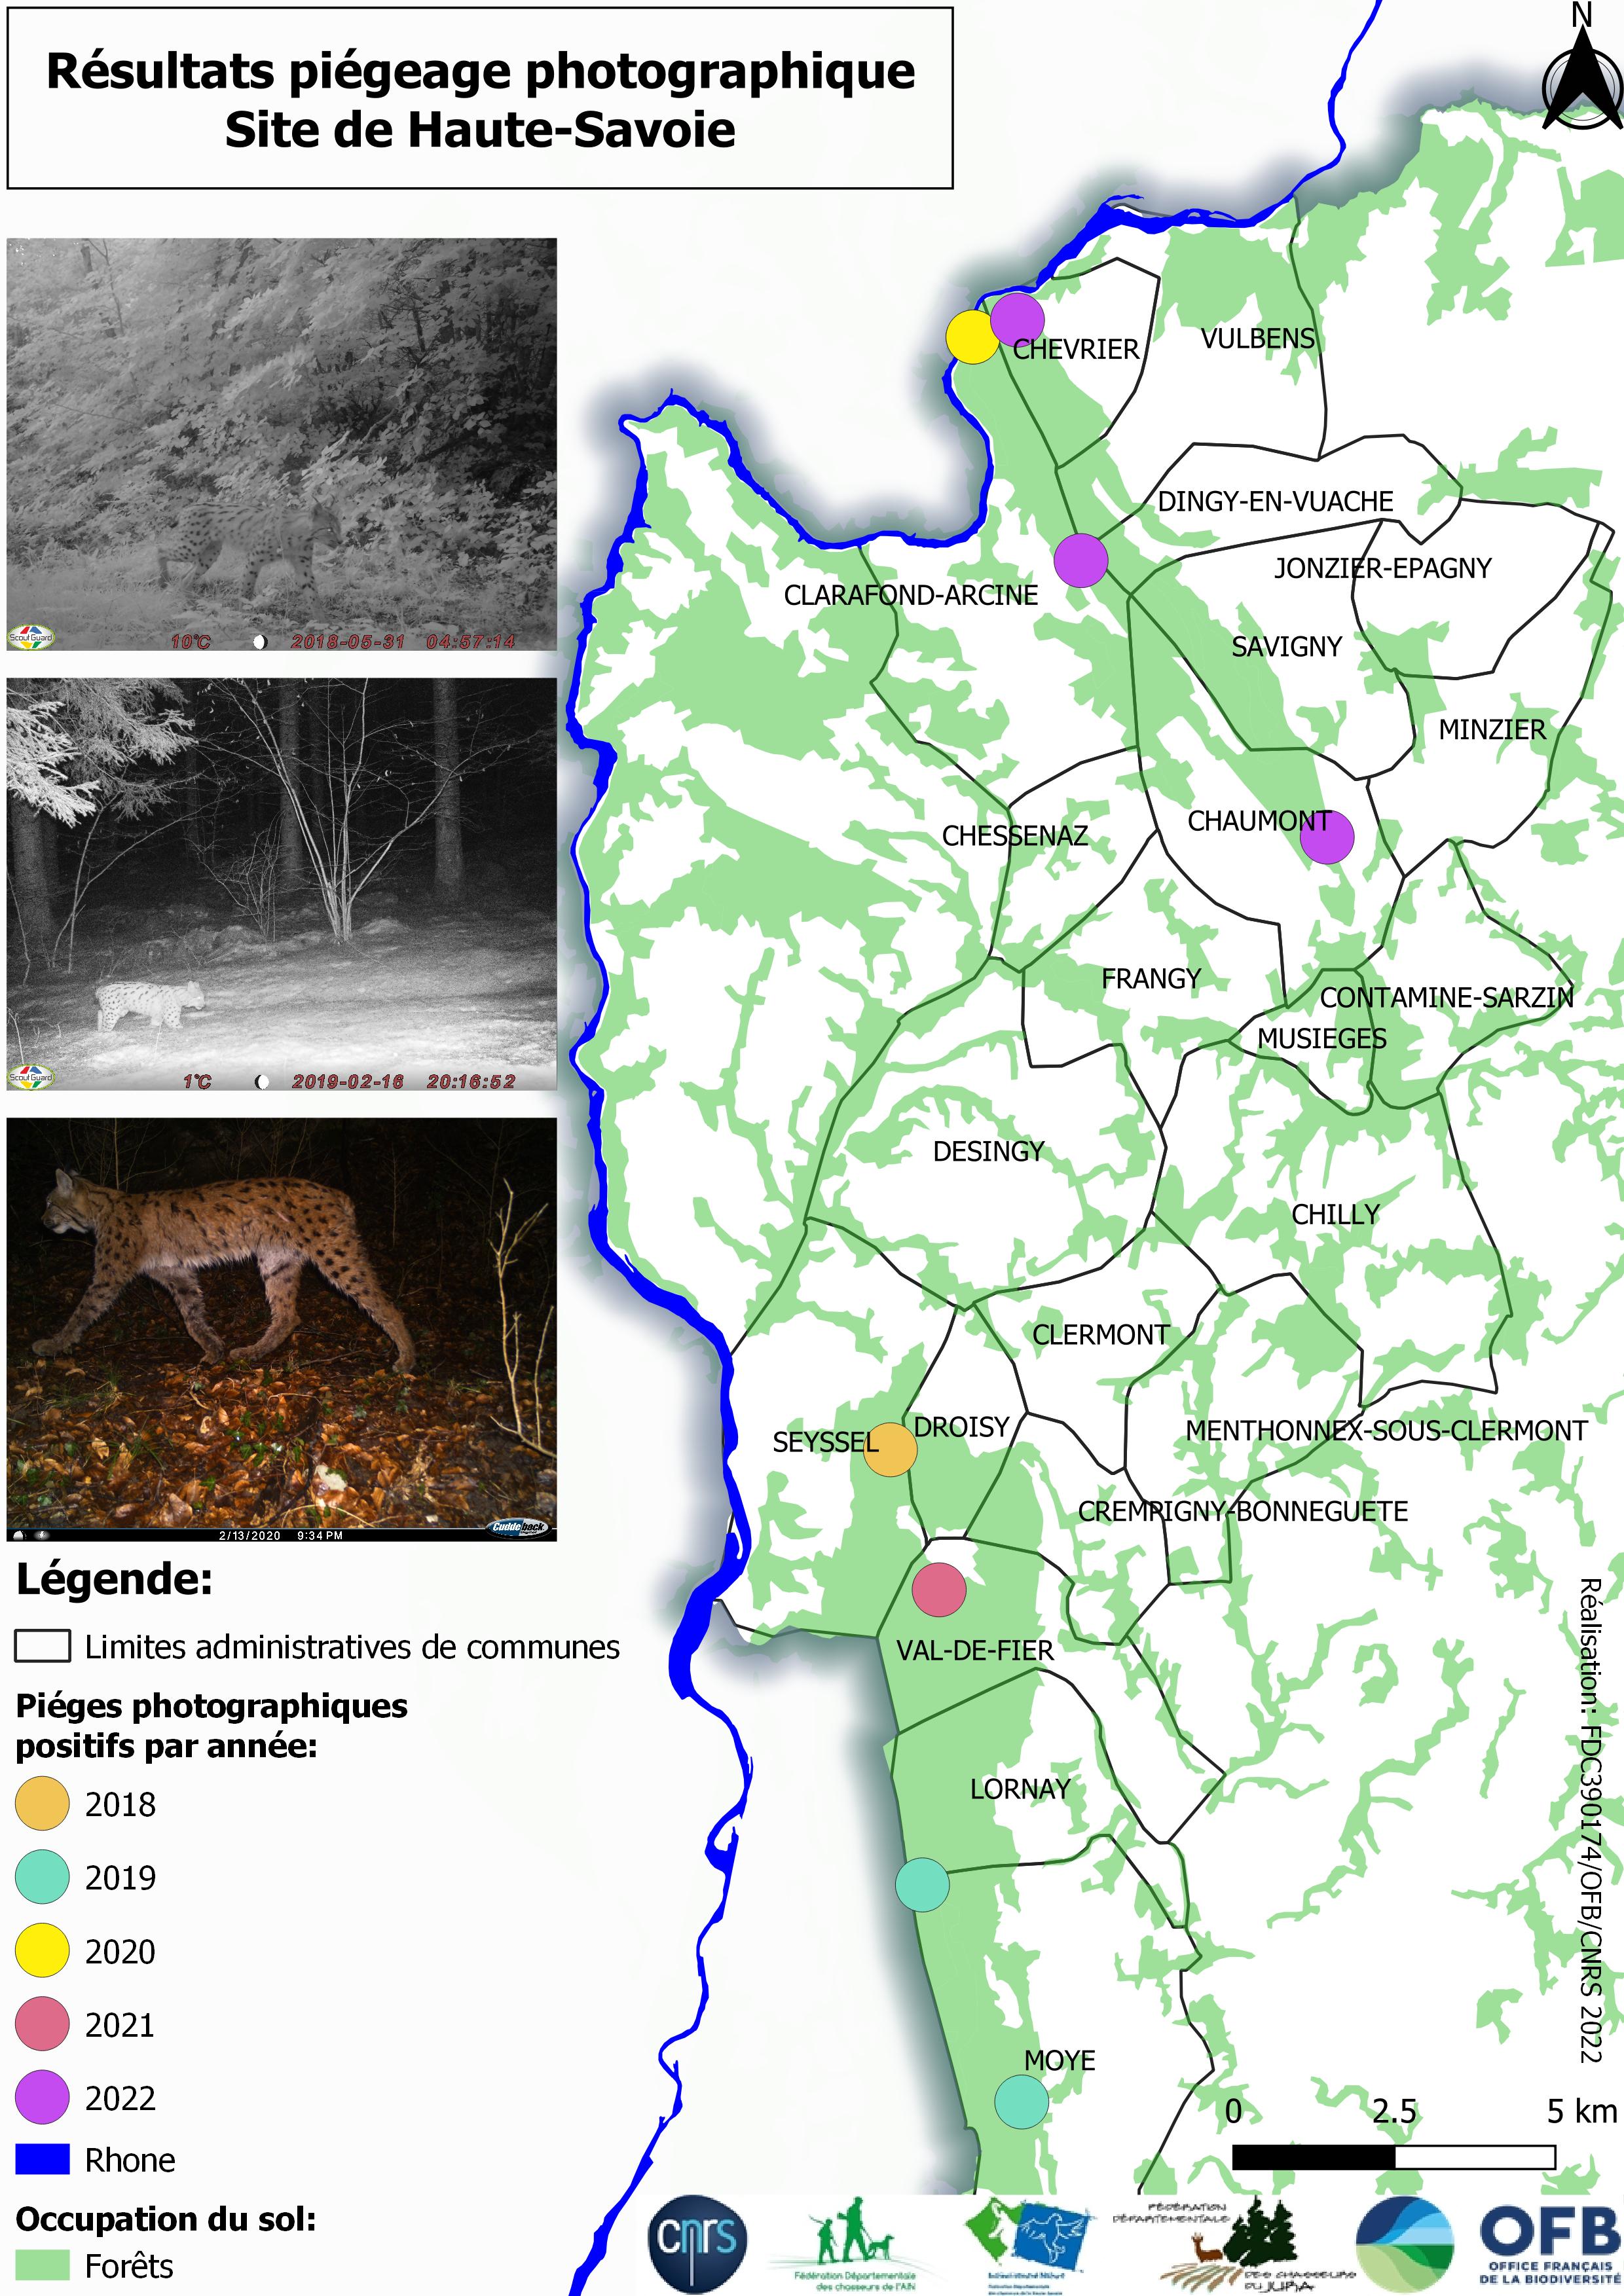 Résultats du suivi photographique des lynx en Haute-Savoie